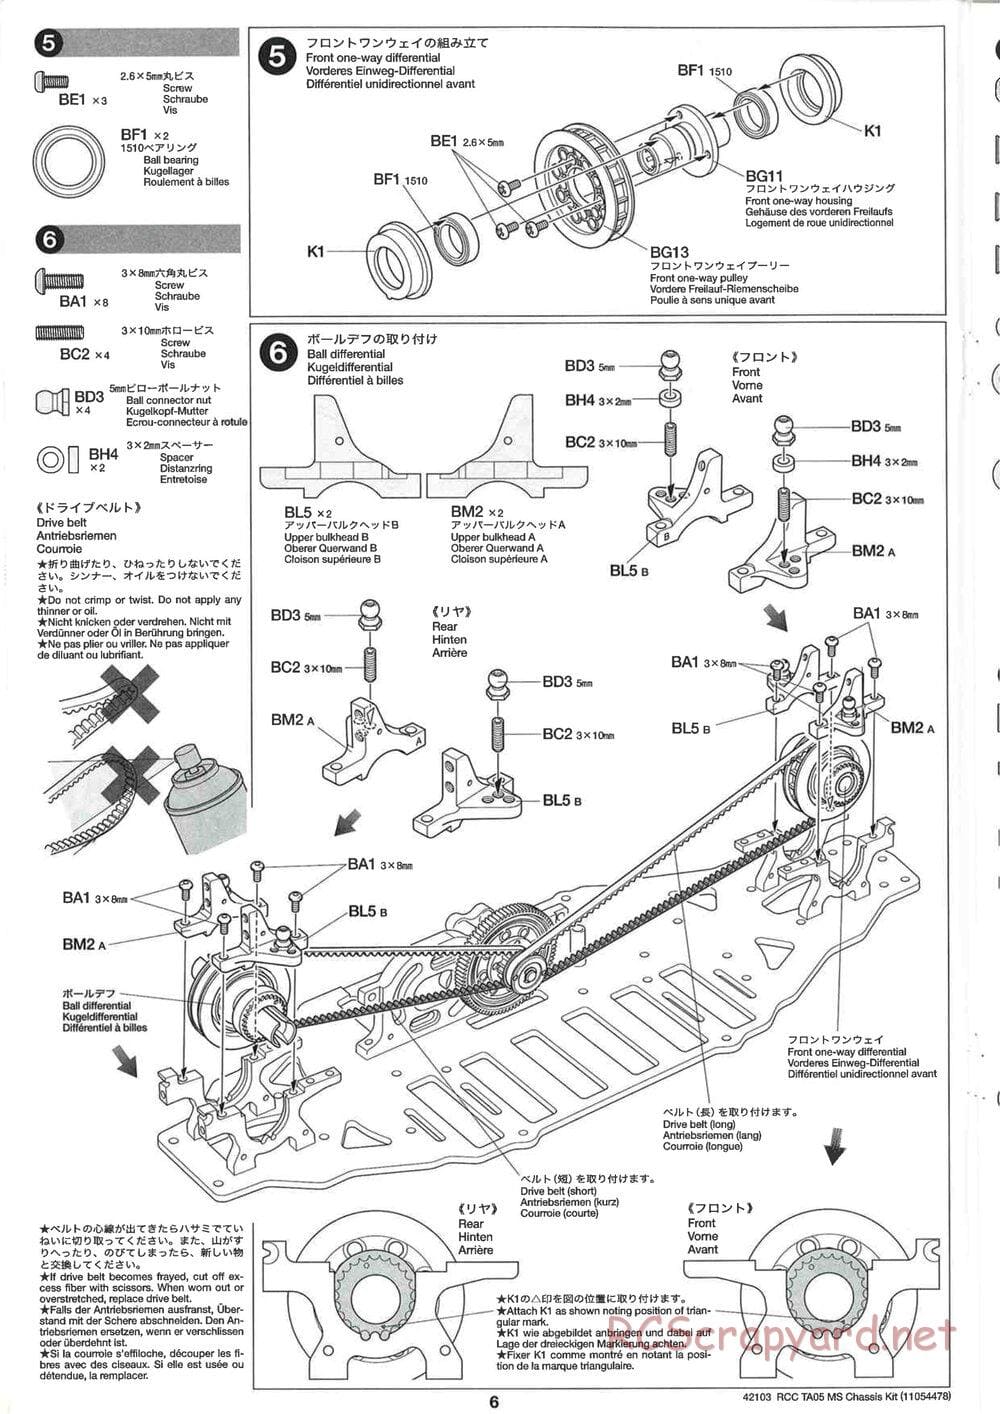 Tamiya - TA05 MS Chassis - Manual - Page 6